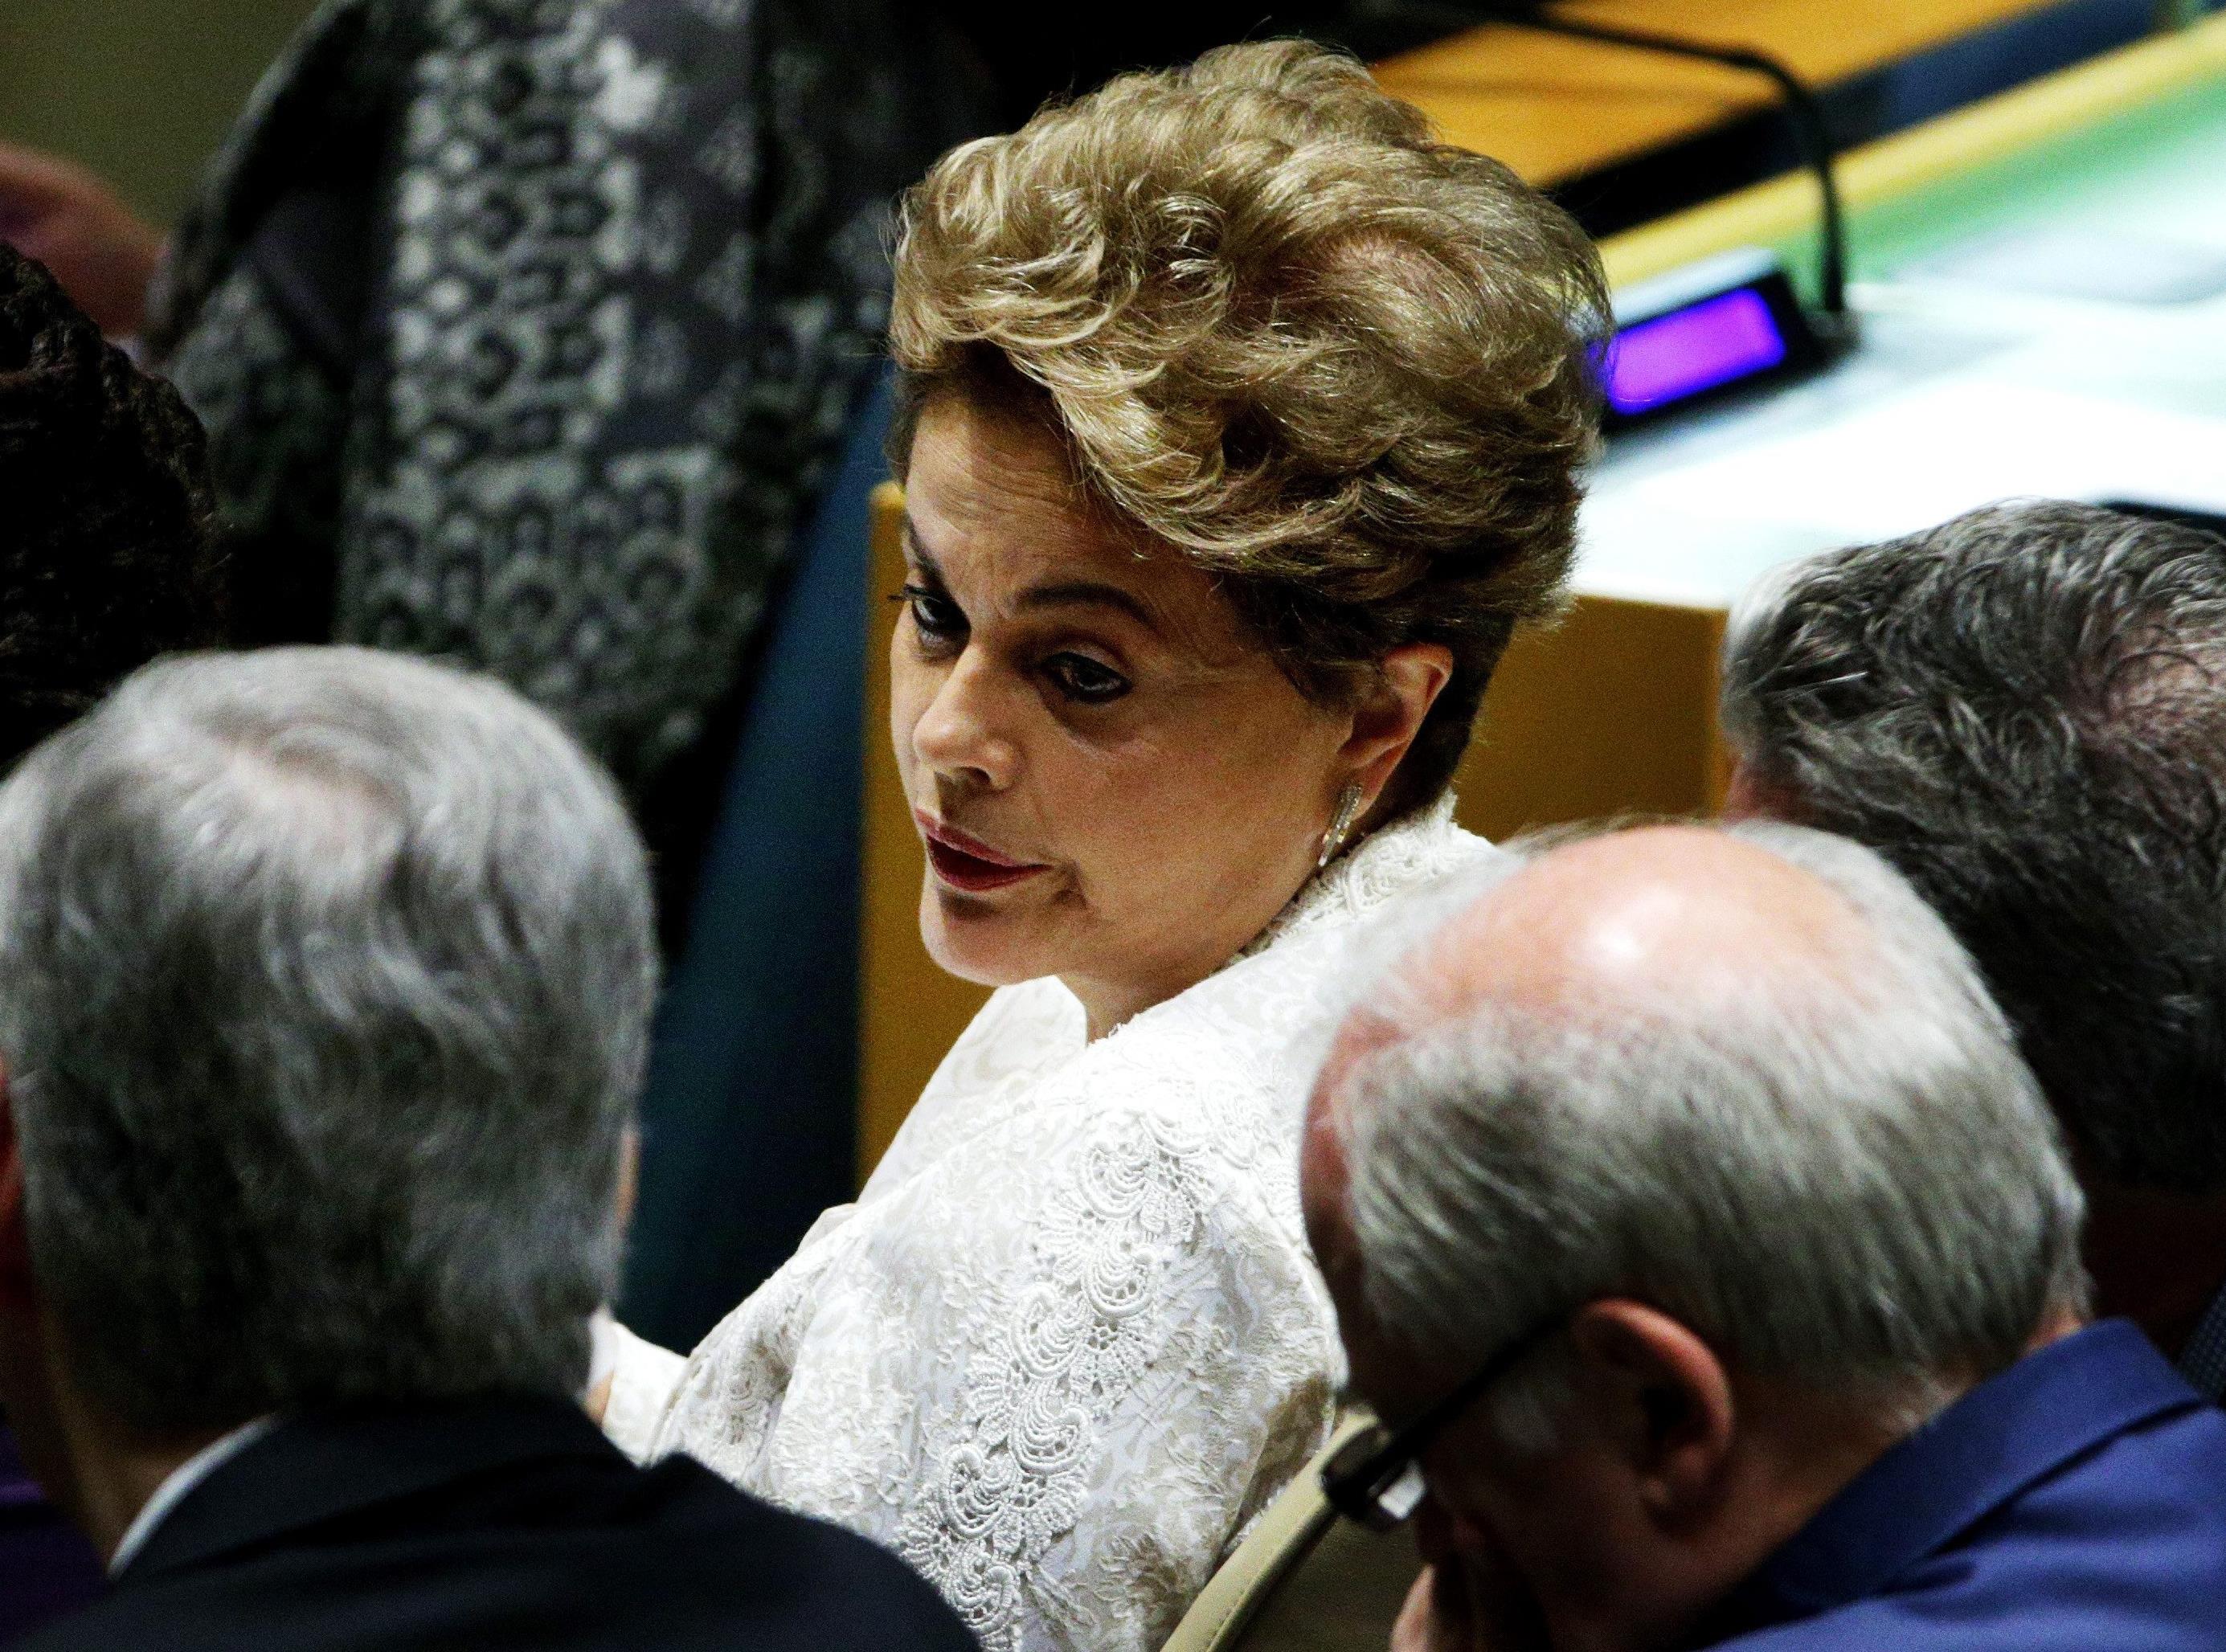 Η Ρούσεφ απειλεί, αν αποπεμφθεί, να ζητήσει διεθνές μπλόκο στη Βραζιλία